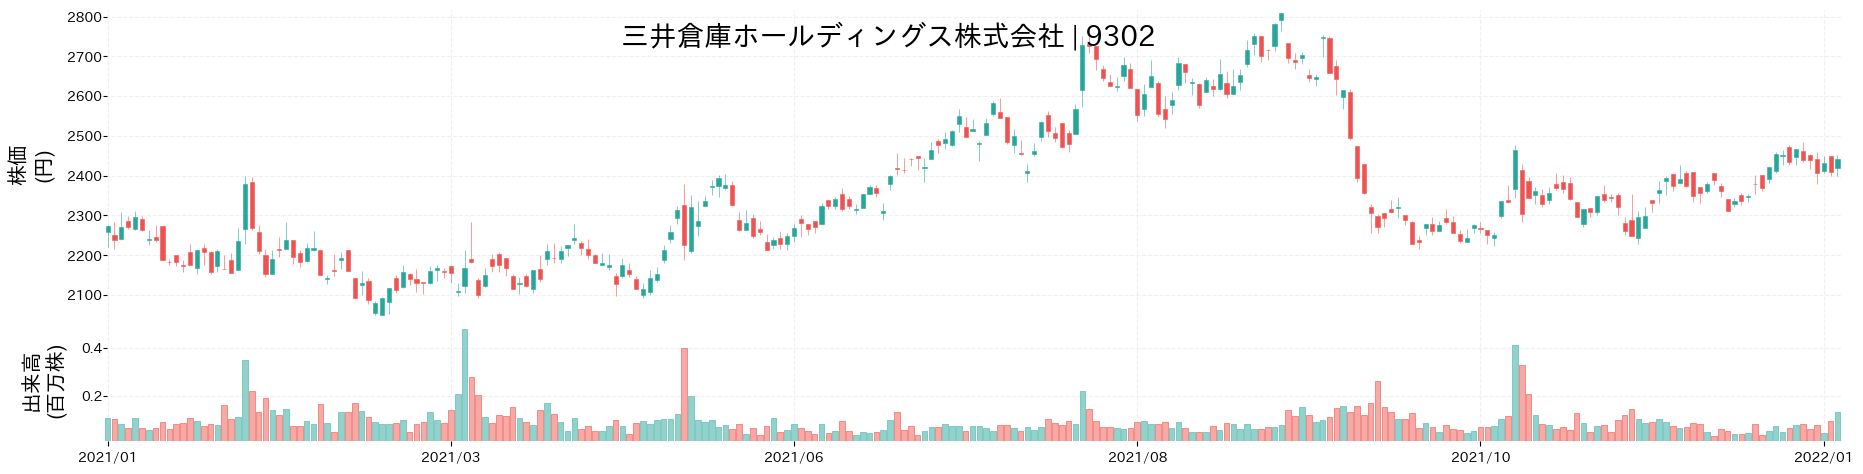 三井倉庫ホールディングスの株価推移(2021)